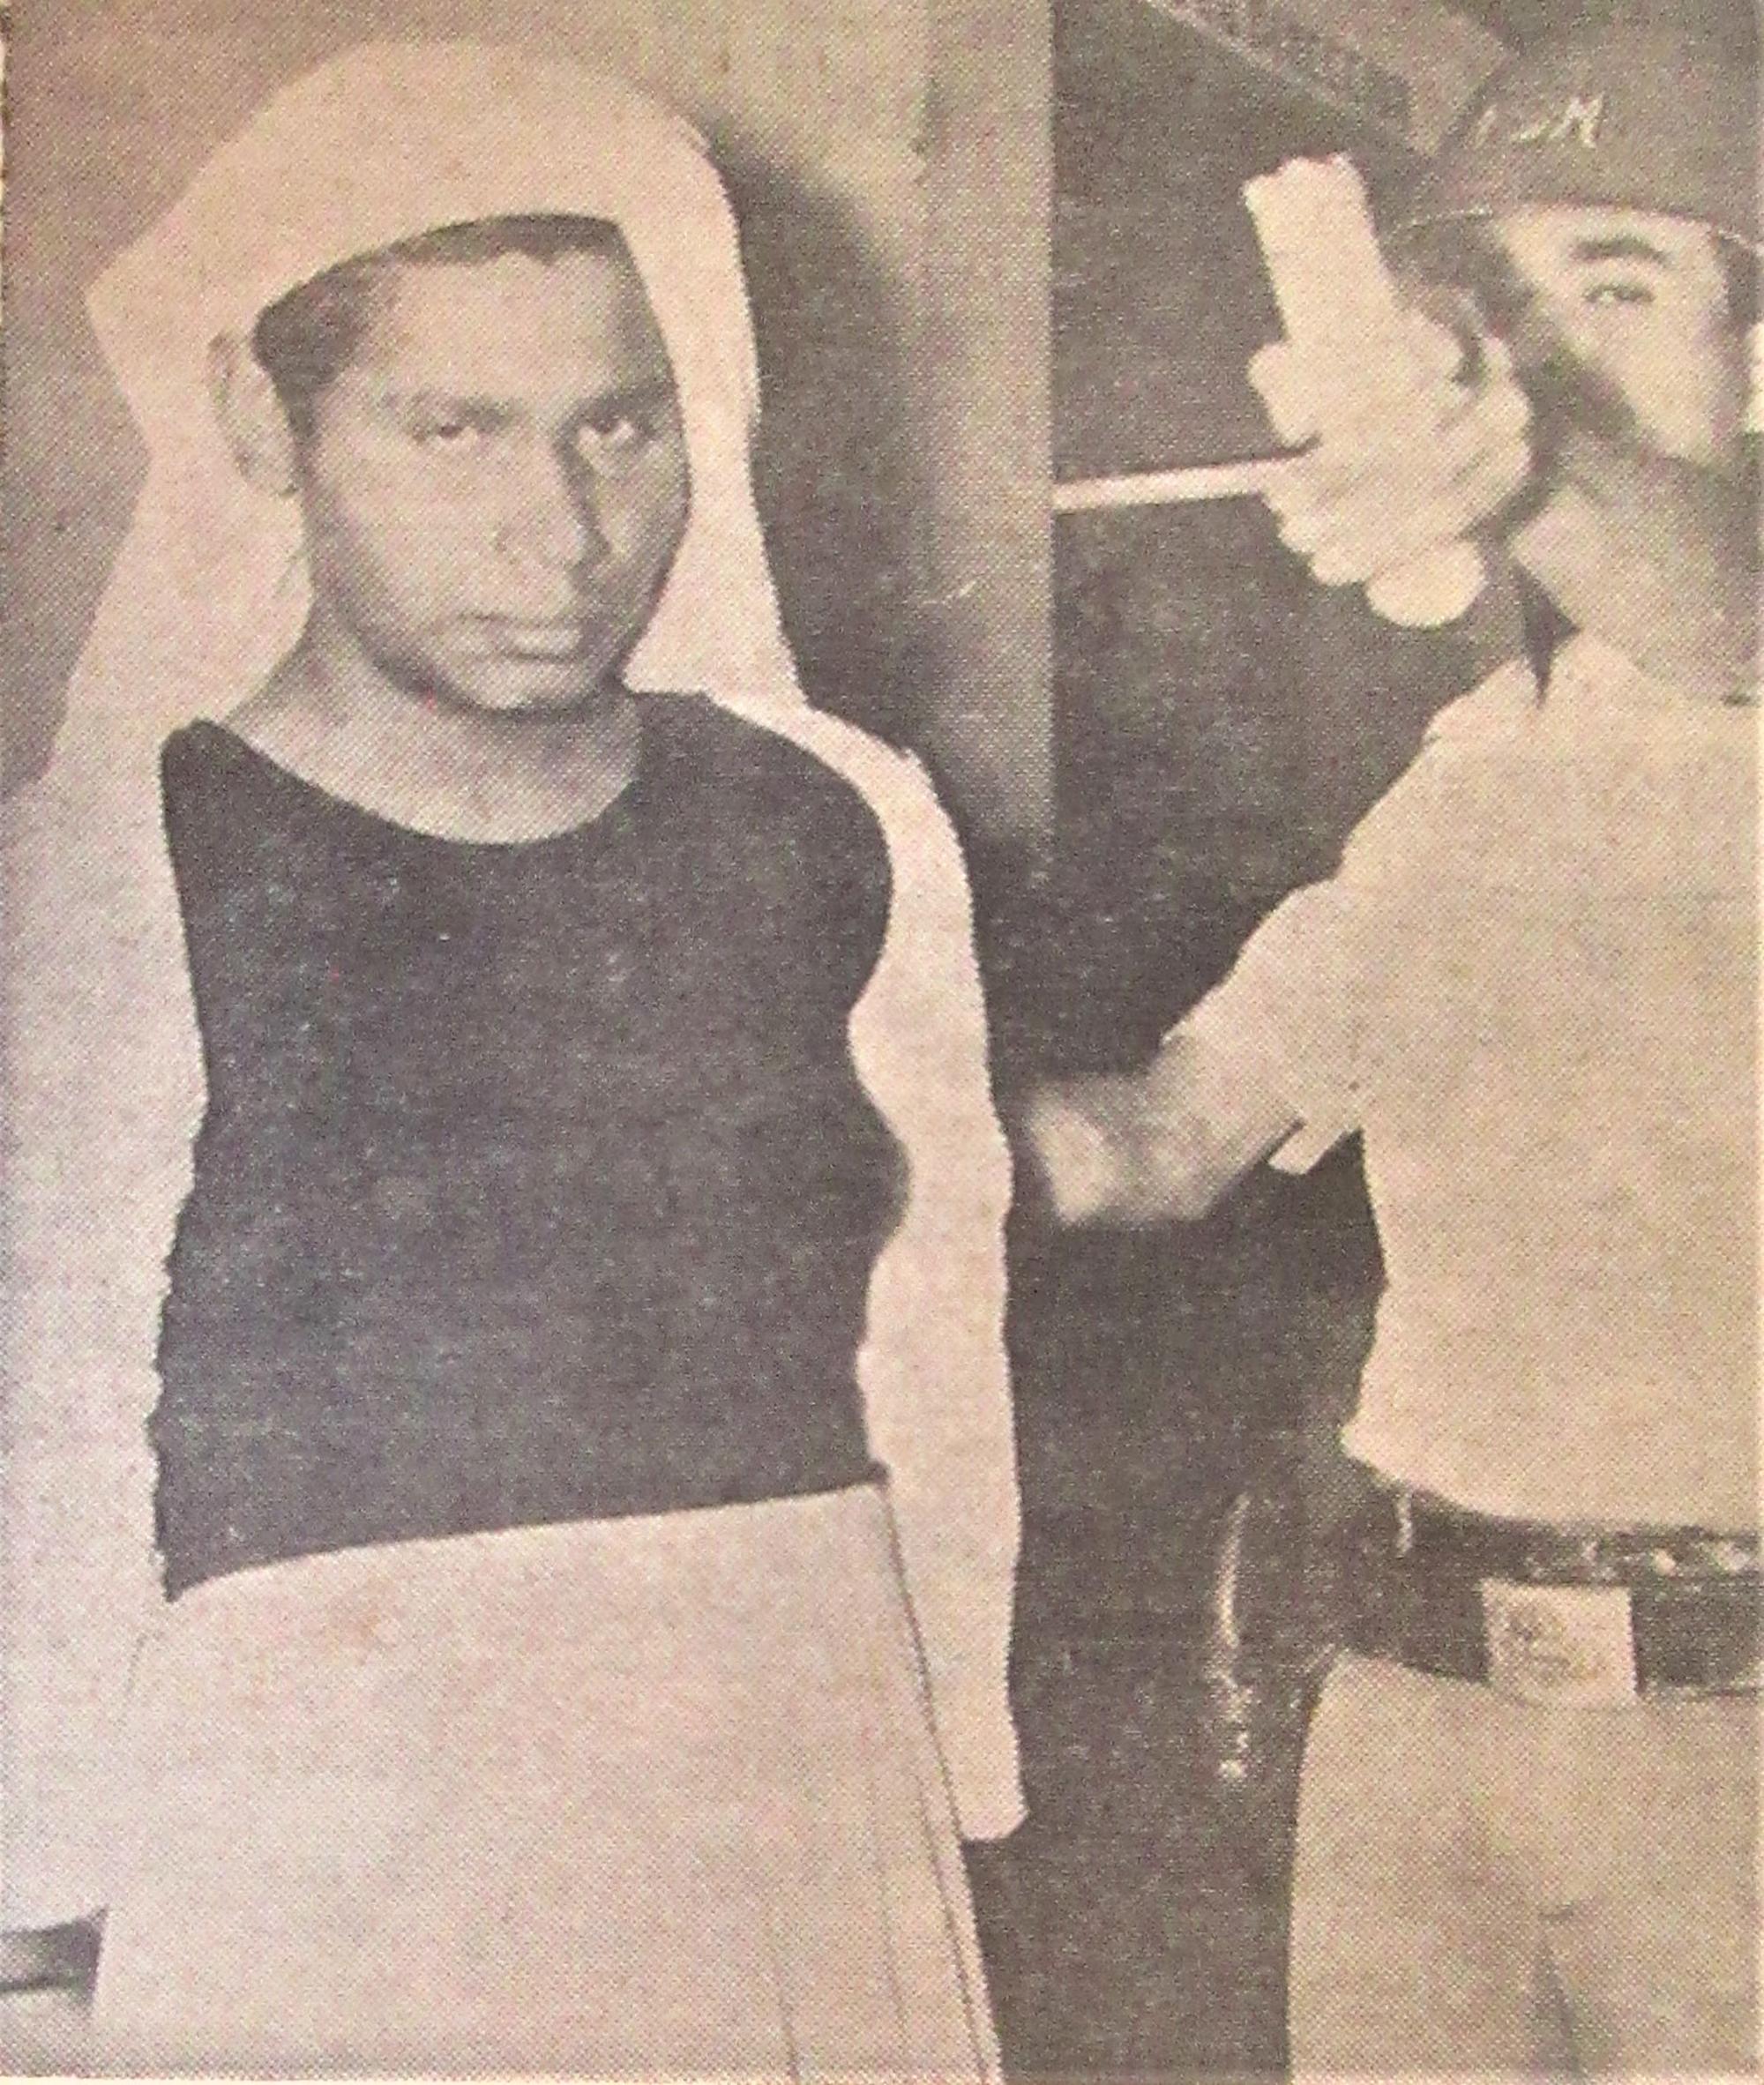 Hombre disfrazado de mujer. Fuente: El Diario de Hoy, 20 de octubre de 1967, Contratapa. Cortesía Isaac Salman.